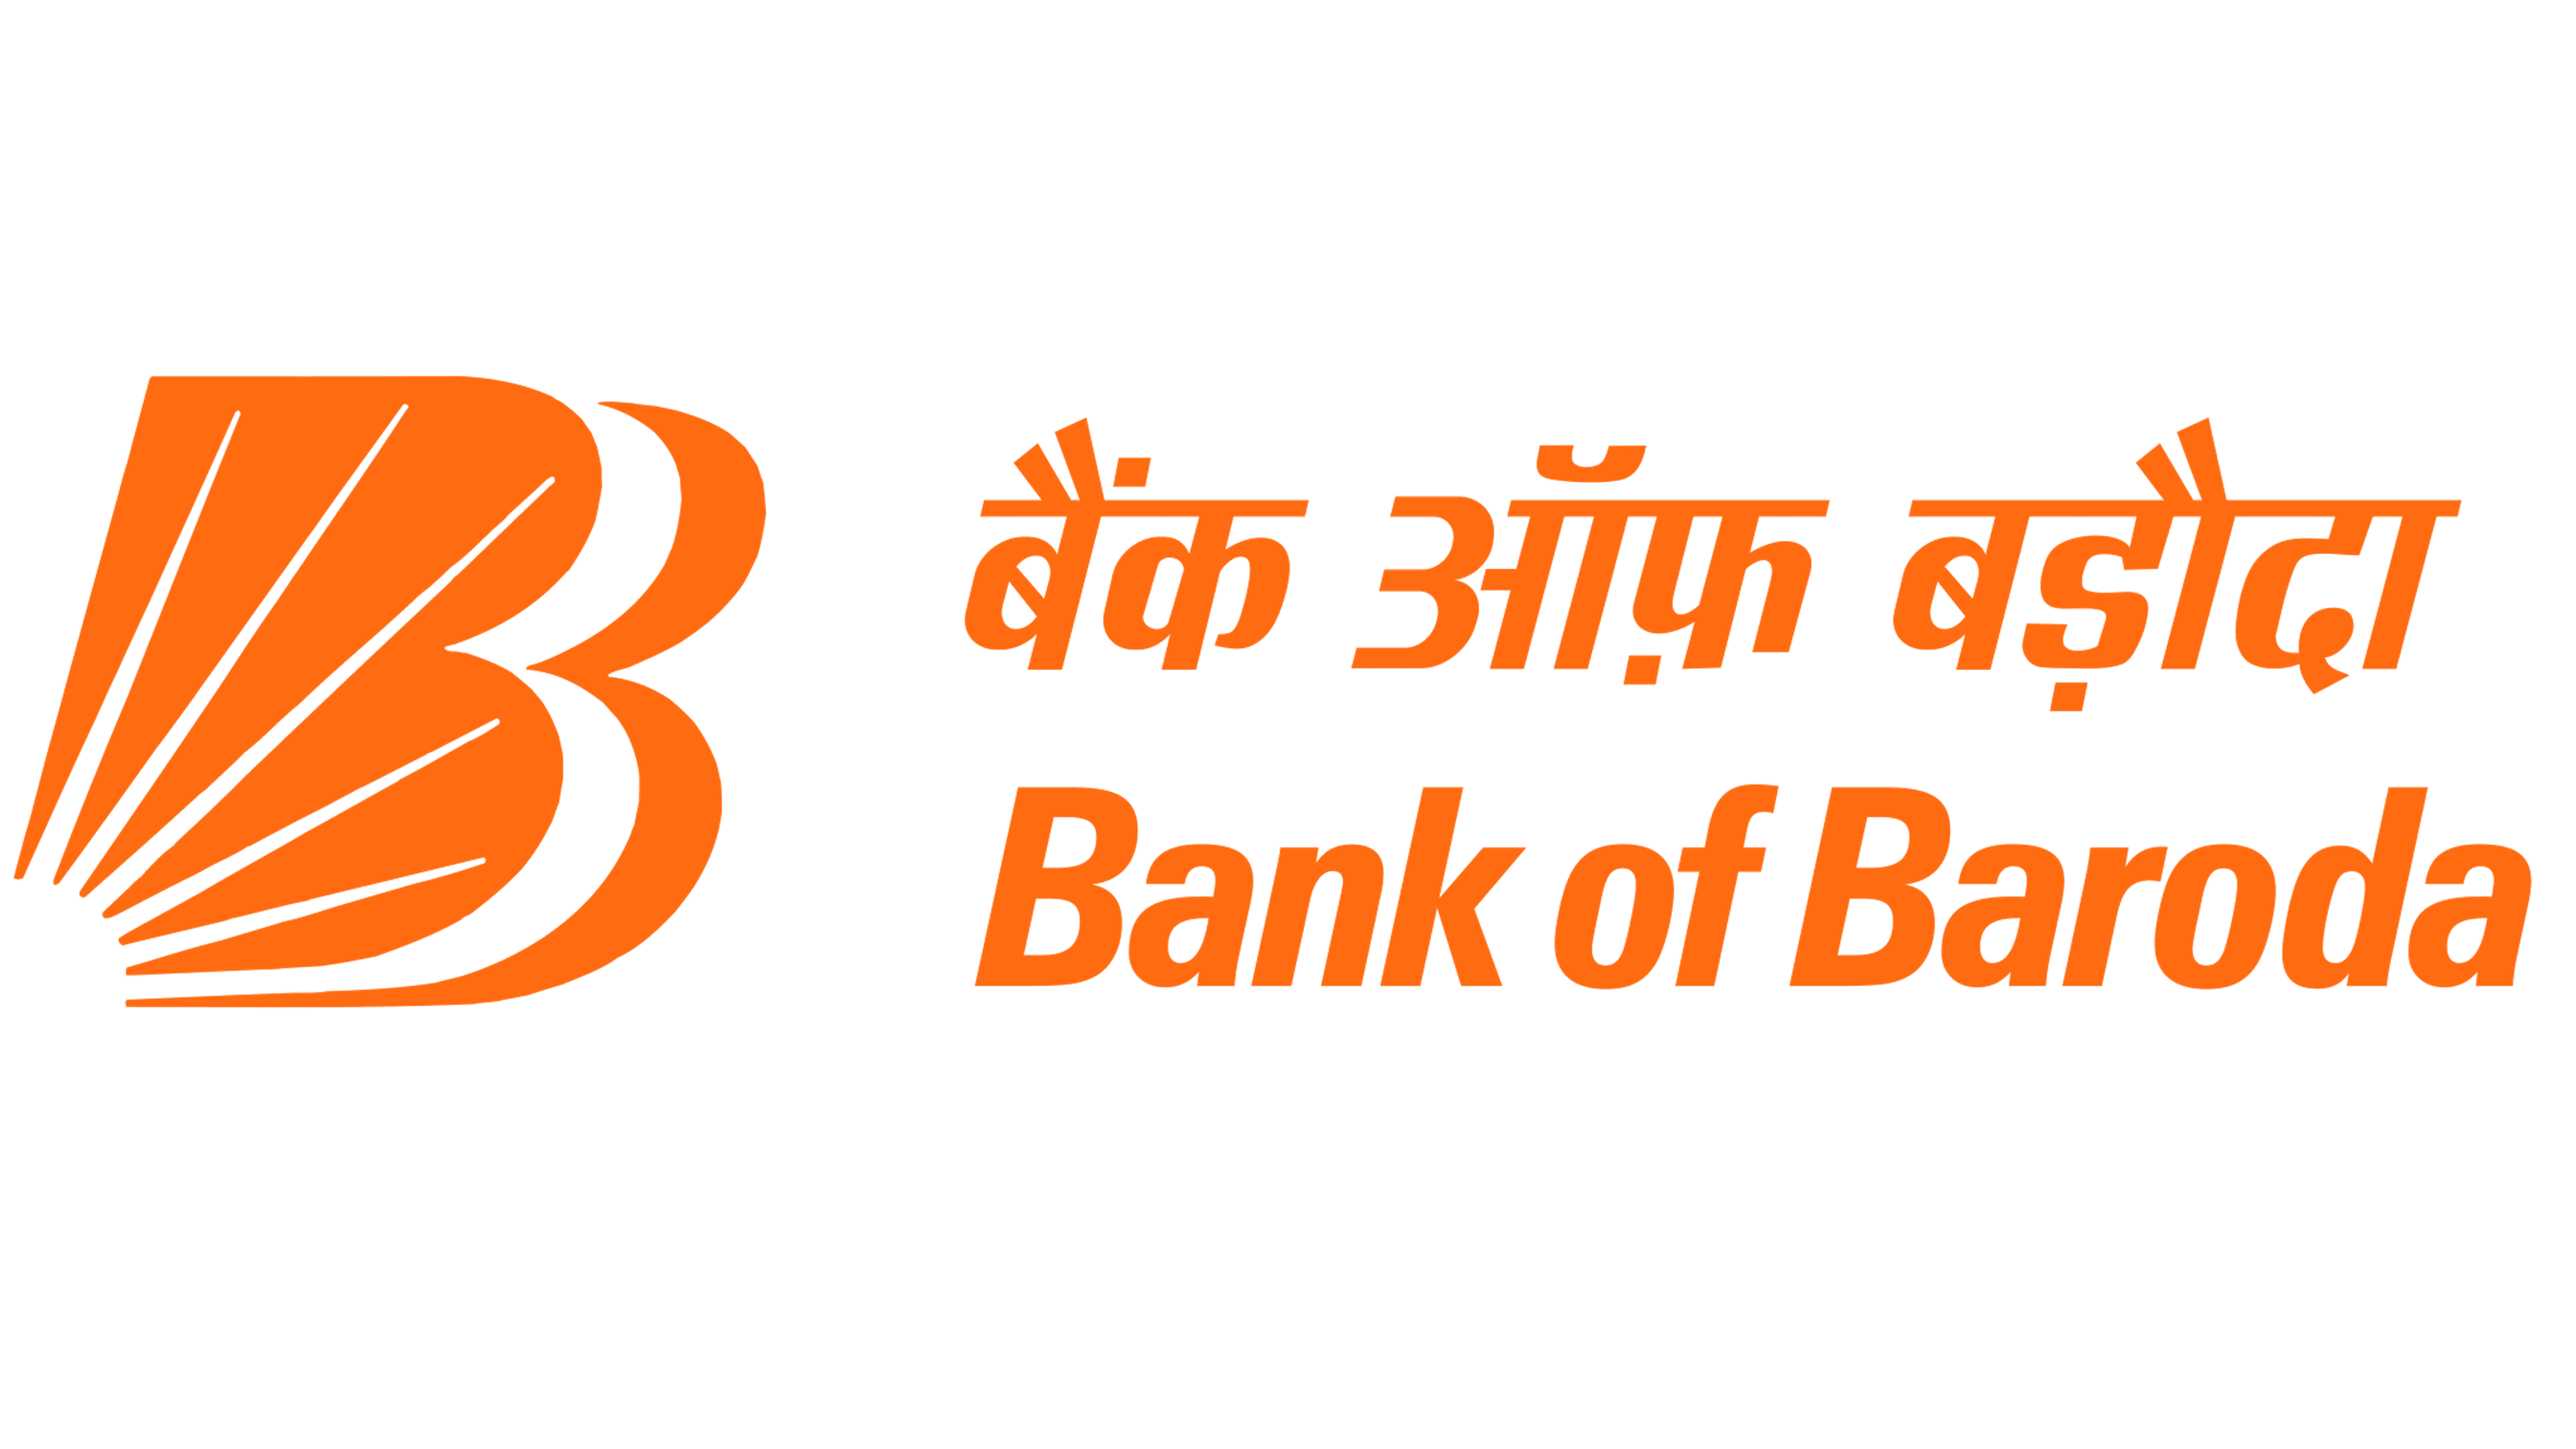 Bank of Baroda Logo and symbol, meaning, history, PNG